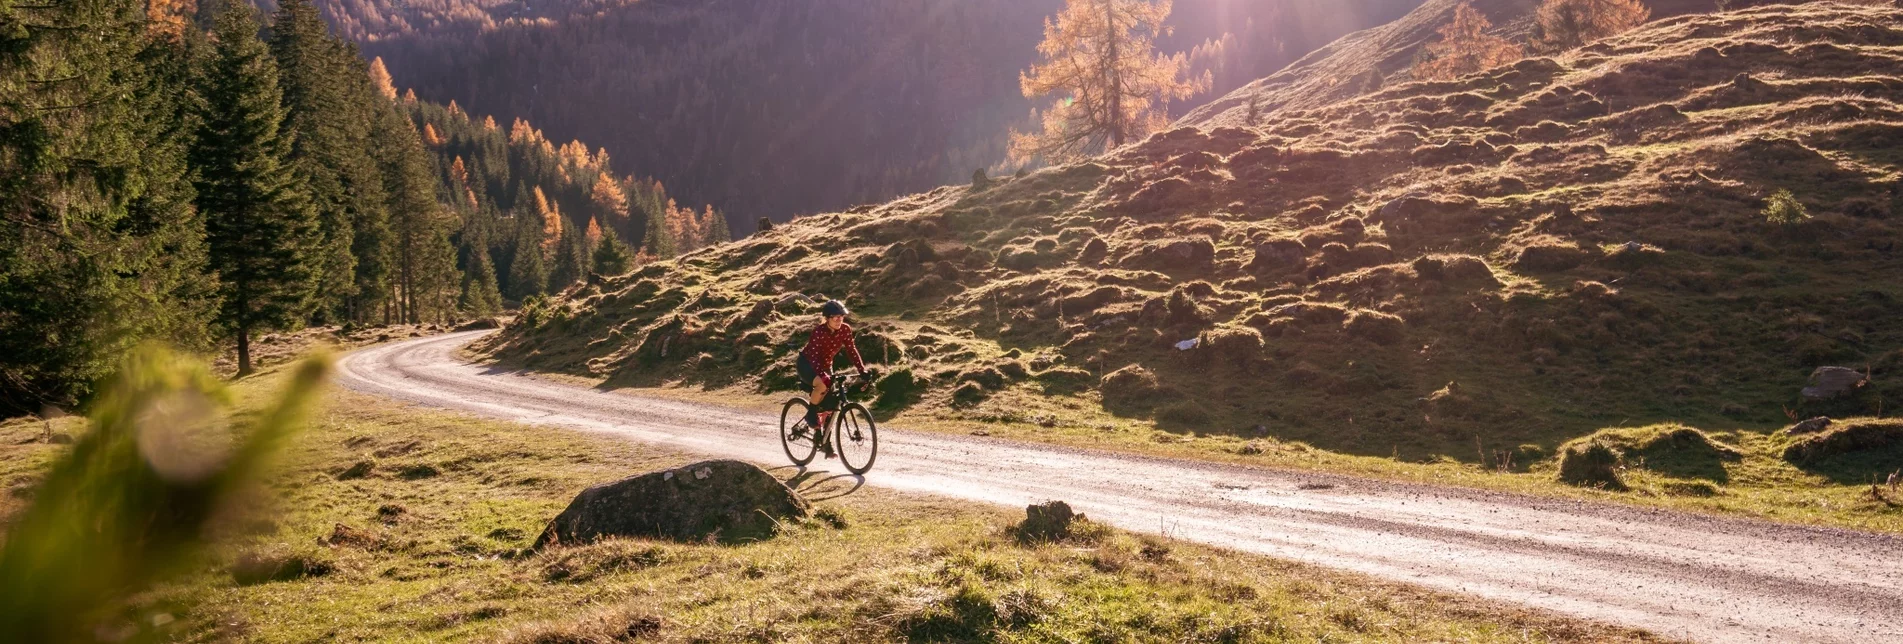 miscellaneousCyclingTour Gravel Bike - Five-Mountains Tour | 10 - Touren-Impression #1 | © Erlebnisregion Schladming-Dachstein